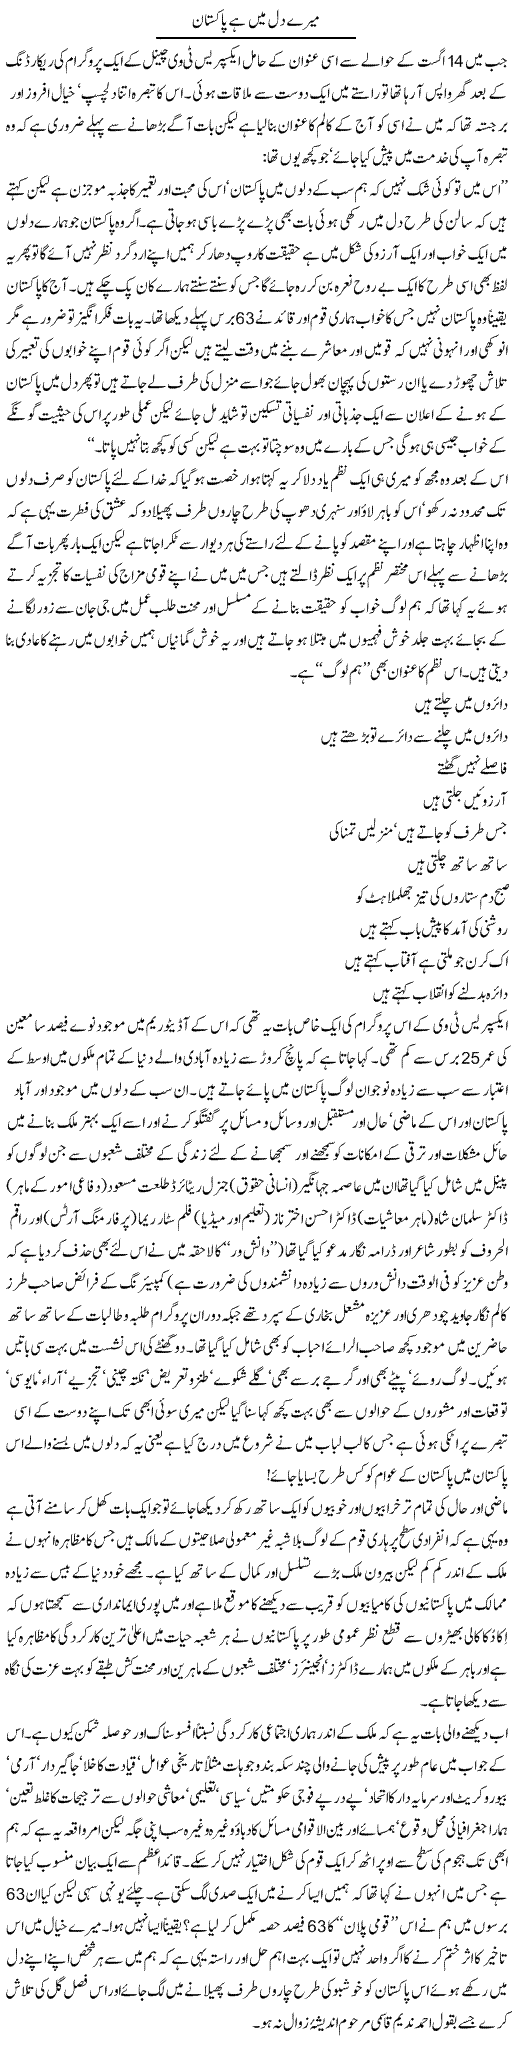 Mera Dil Pakistan Express Column Amjad Islam 15 August 2010